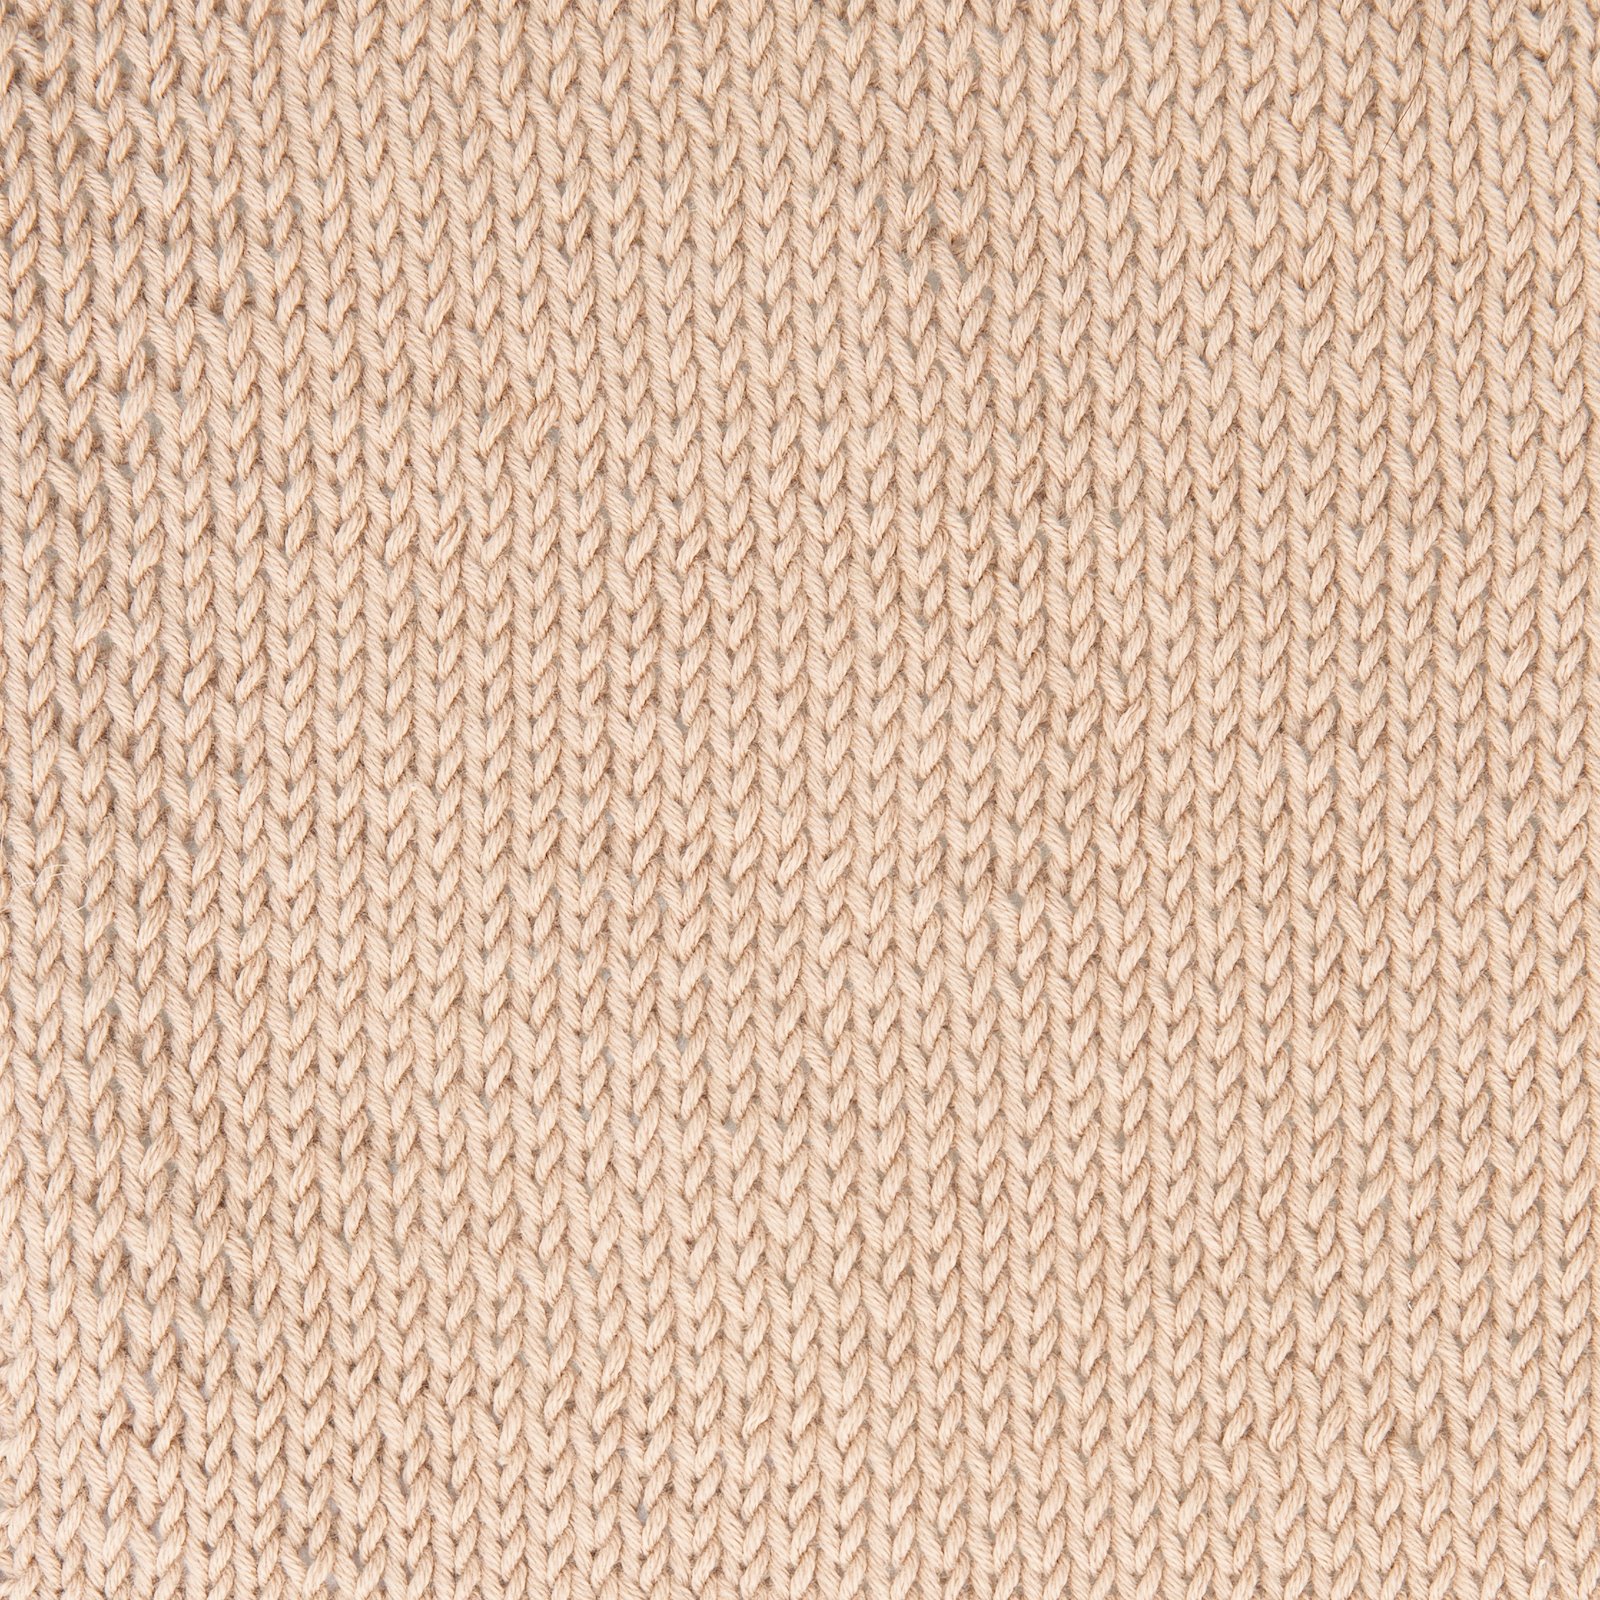 FRAYA, 100% organic cotton yarn "Soft", sand 90063538_sskit